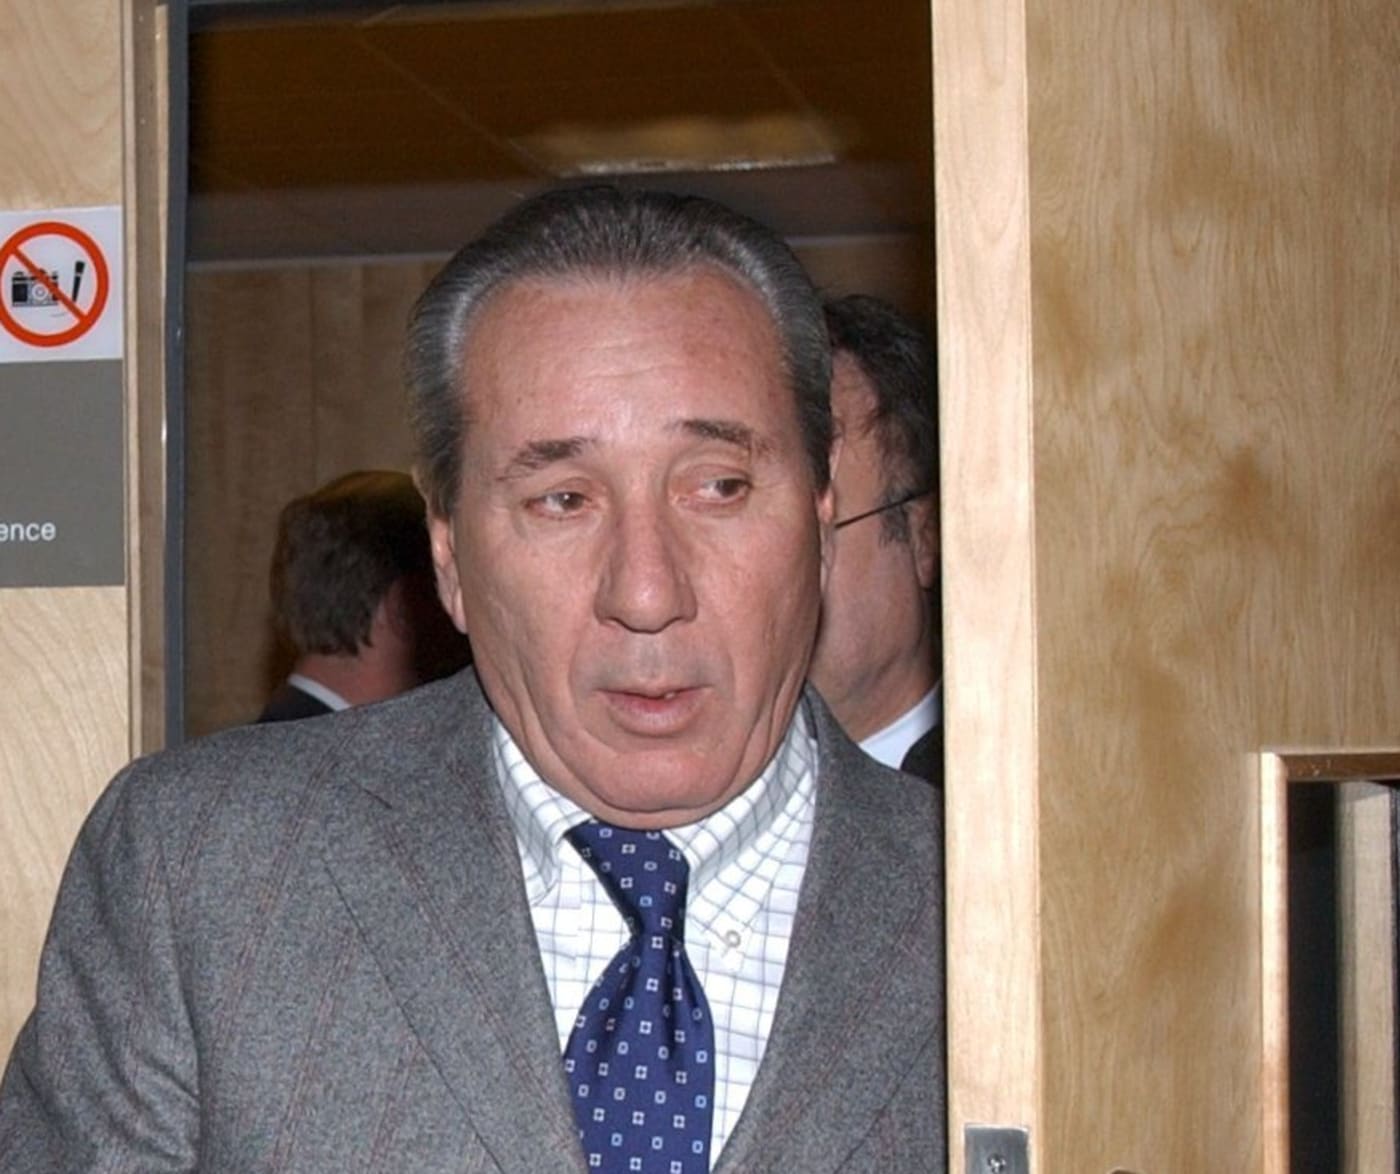 Reputed mafia boss Vito Rizzuto